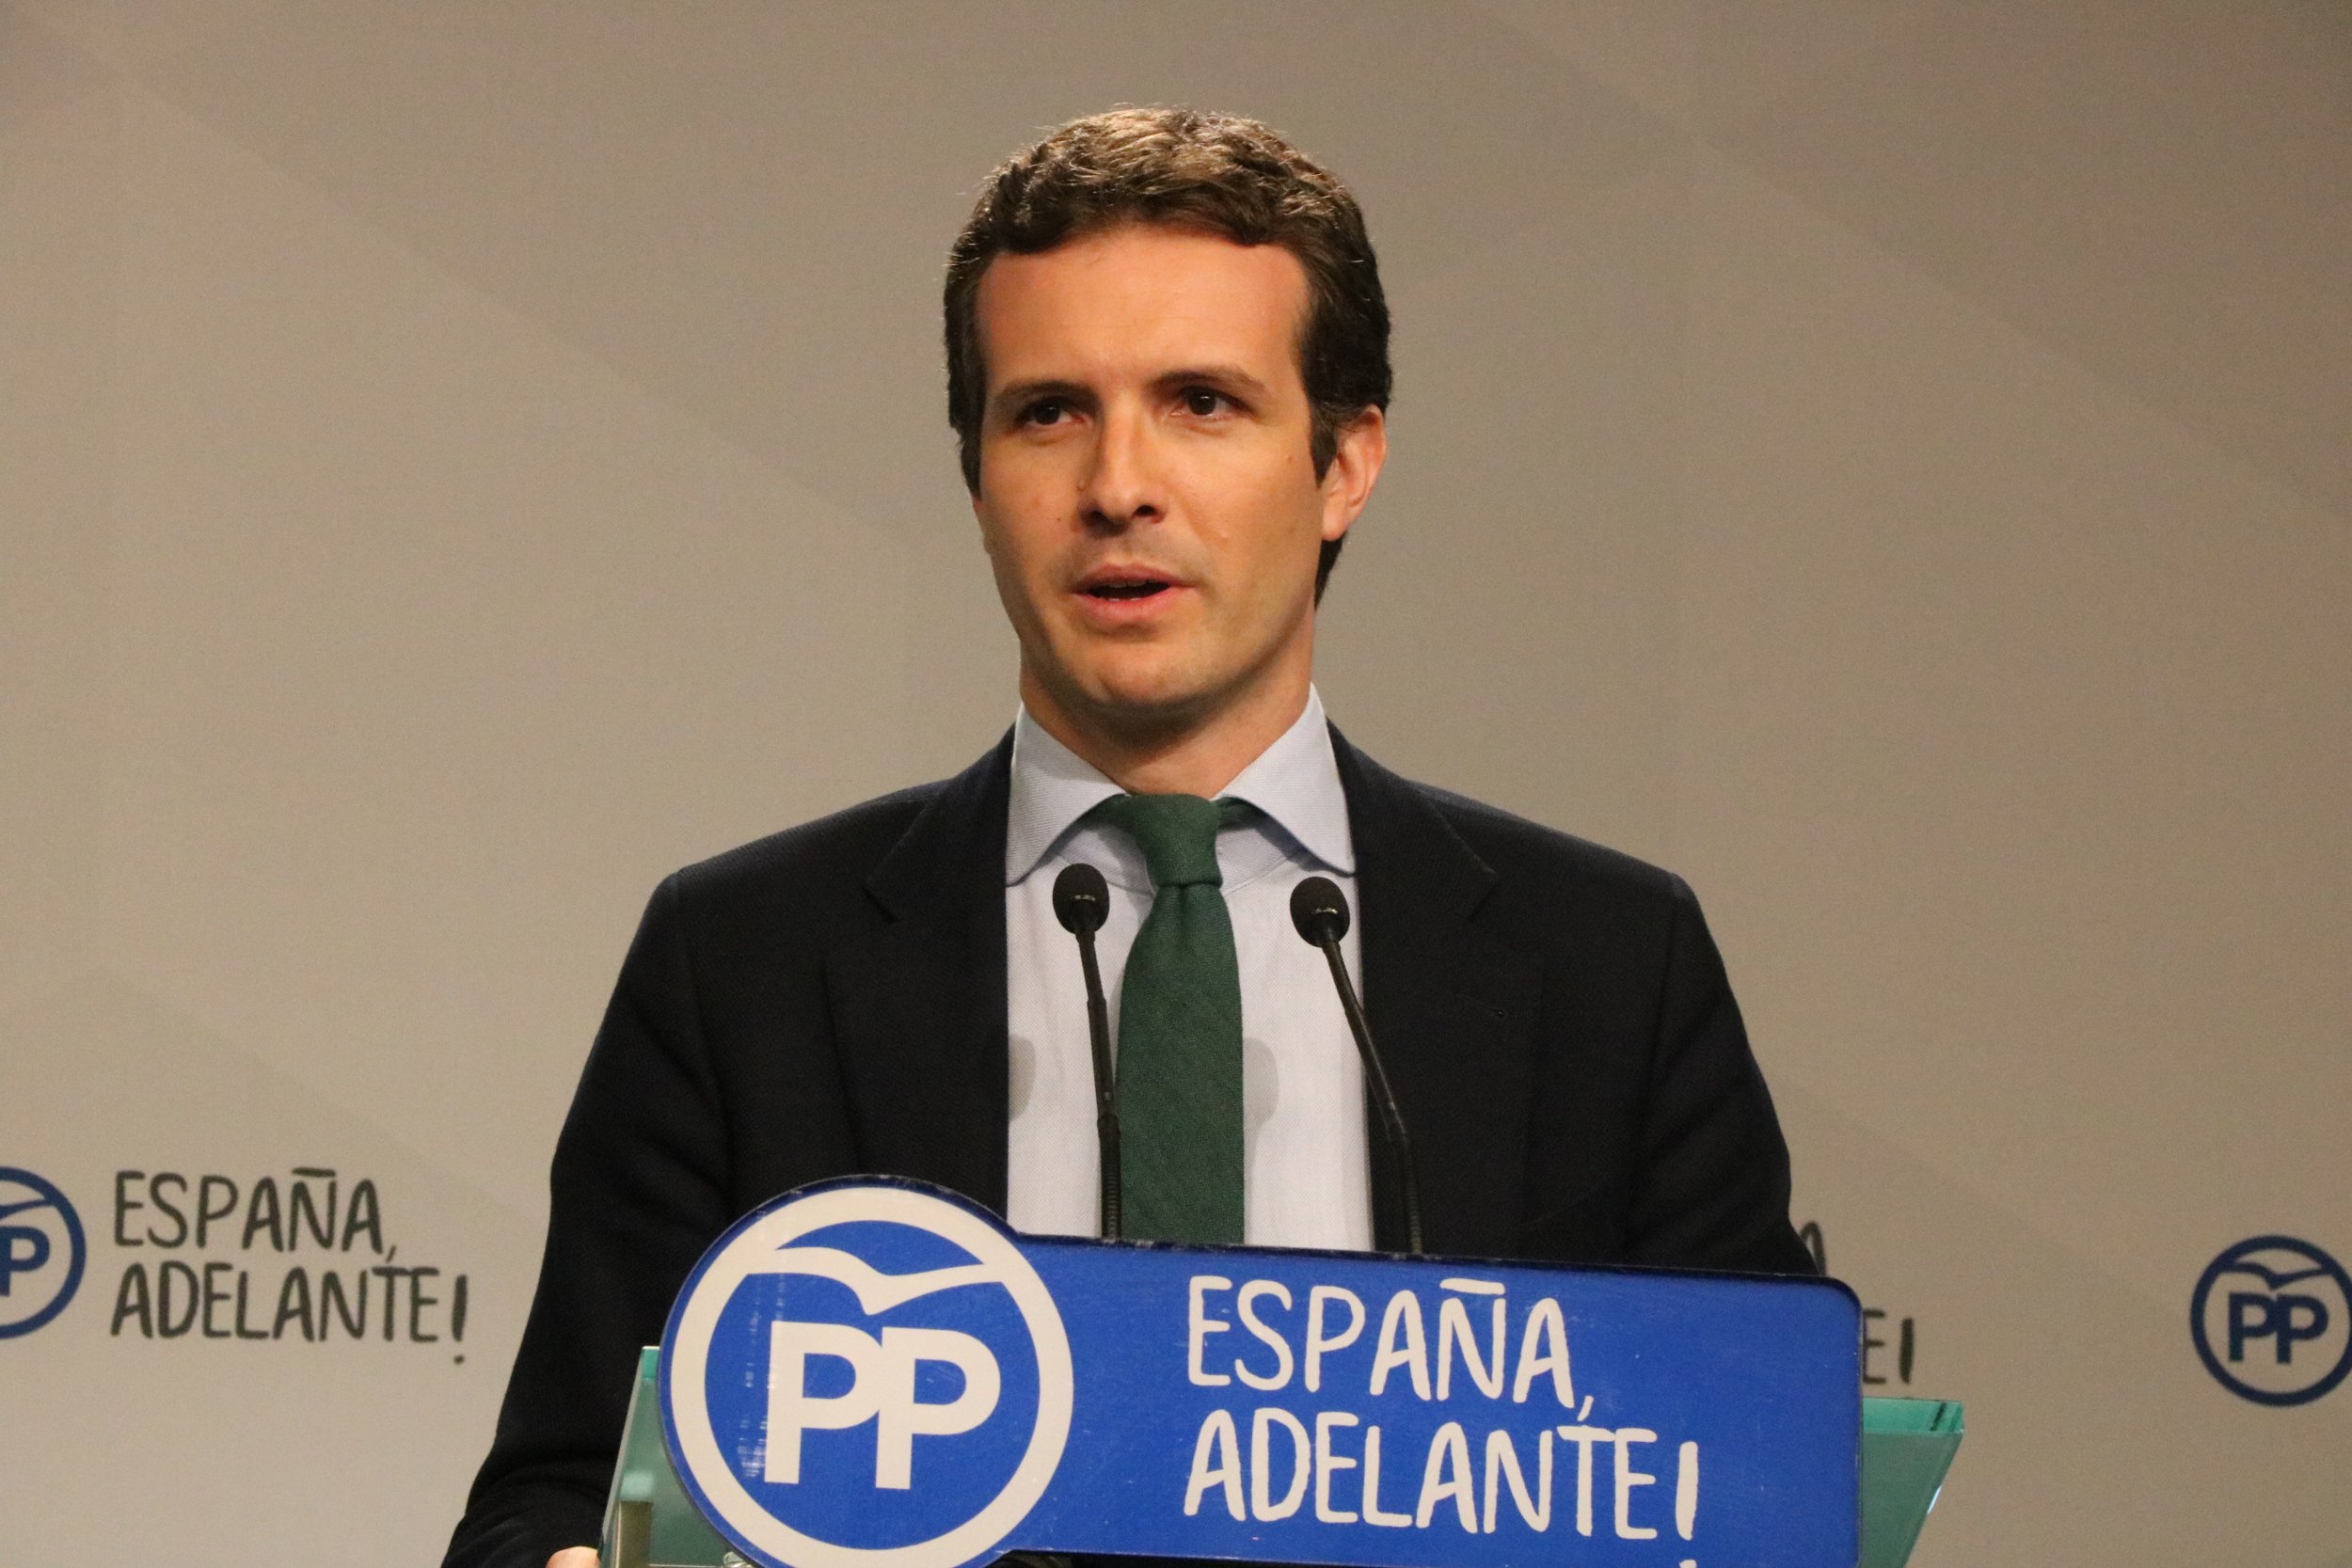 Casado (PP) creu que la "col·lecta" de Junqueras busca eludir responsabilitats